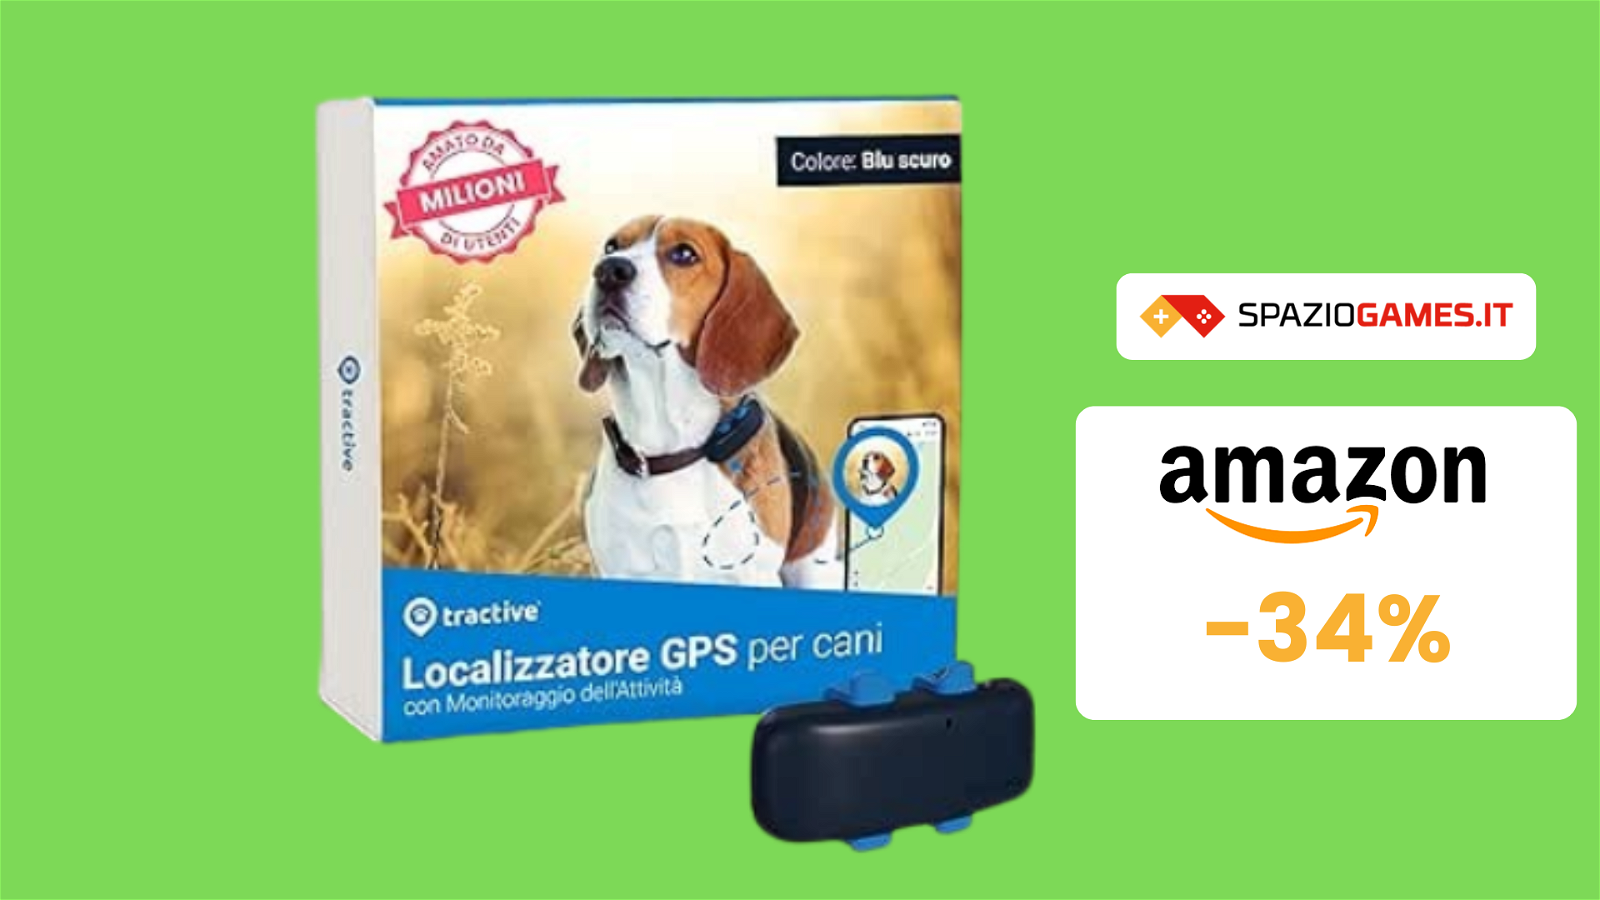 UTILE localizzatore GPS per cani a SOLI 33€! OFFERTA a TEMPO!